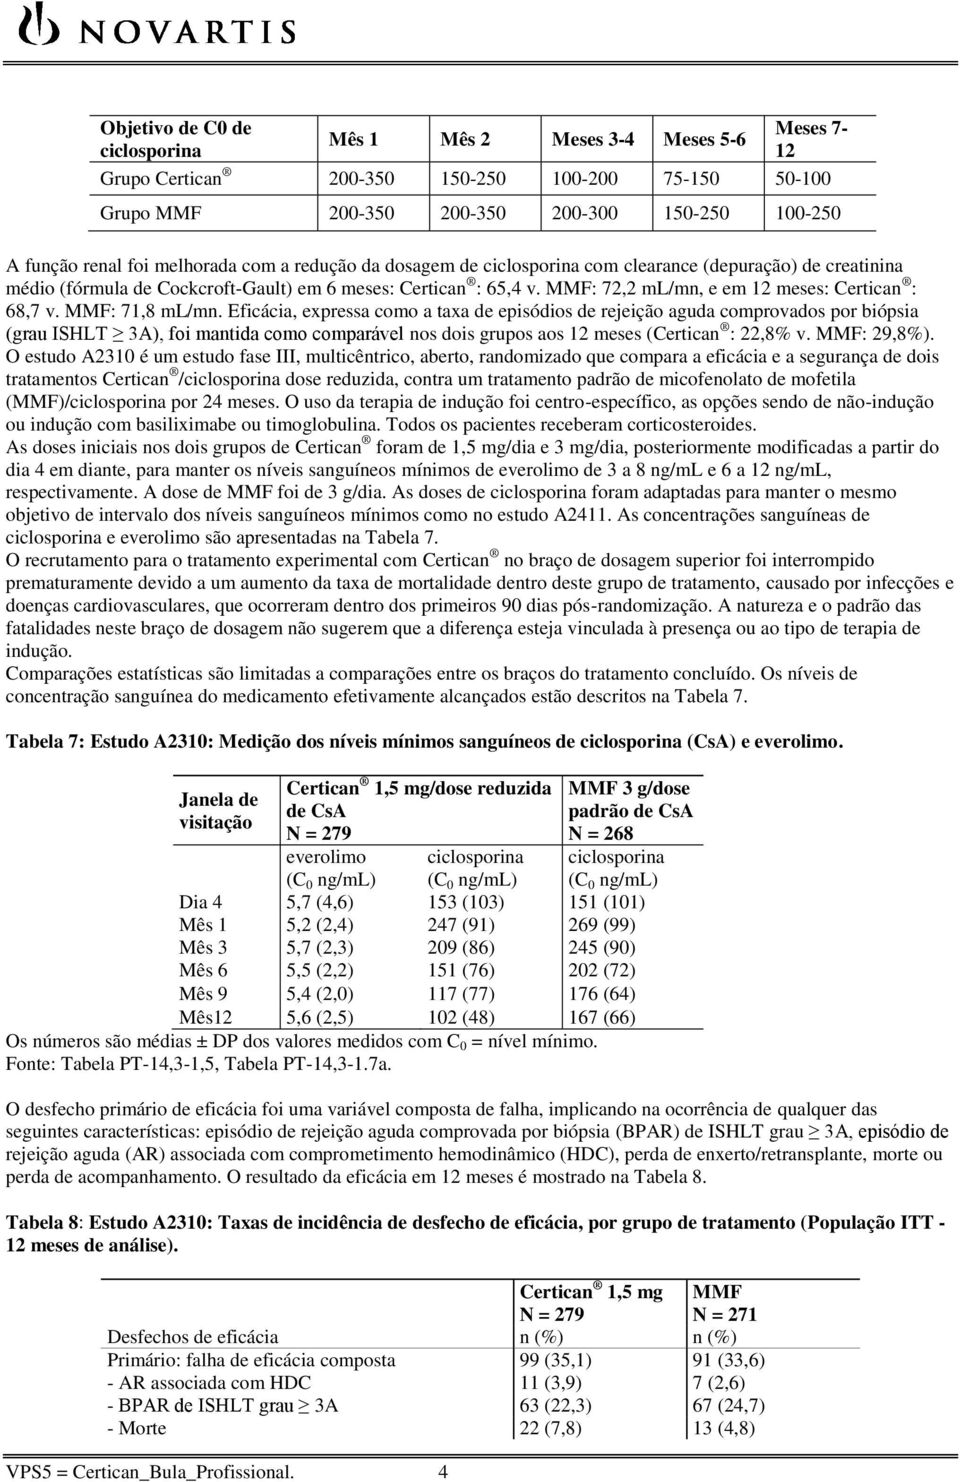 dosagem de ciclosporina com clearance (depuração) de creatinina médio (fórmula de Cockcroft-Gault) em 6 meses: Certican : 65,4 v. MMF: 72,2 ml/mn, e em 12 meses: Certican : 68,7 v. MMF: 71,8 ml/mn.